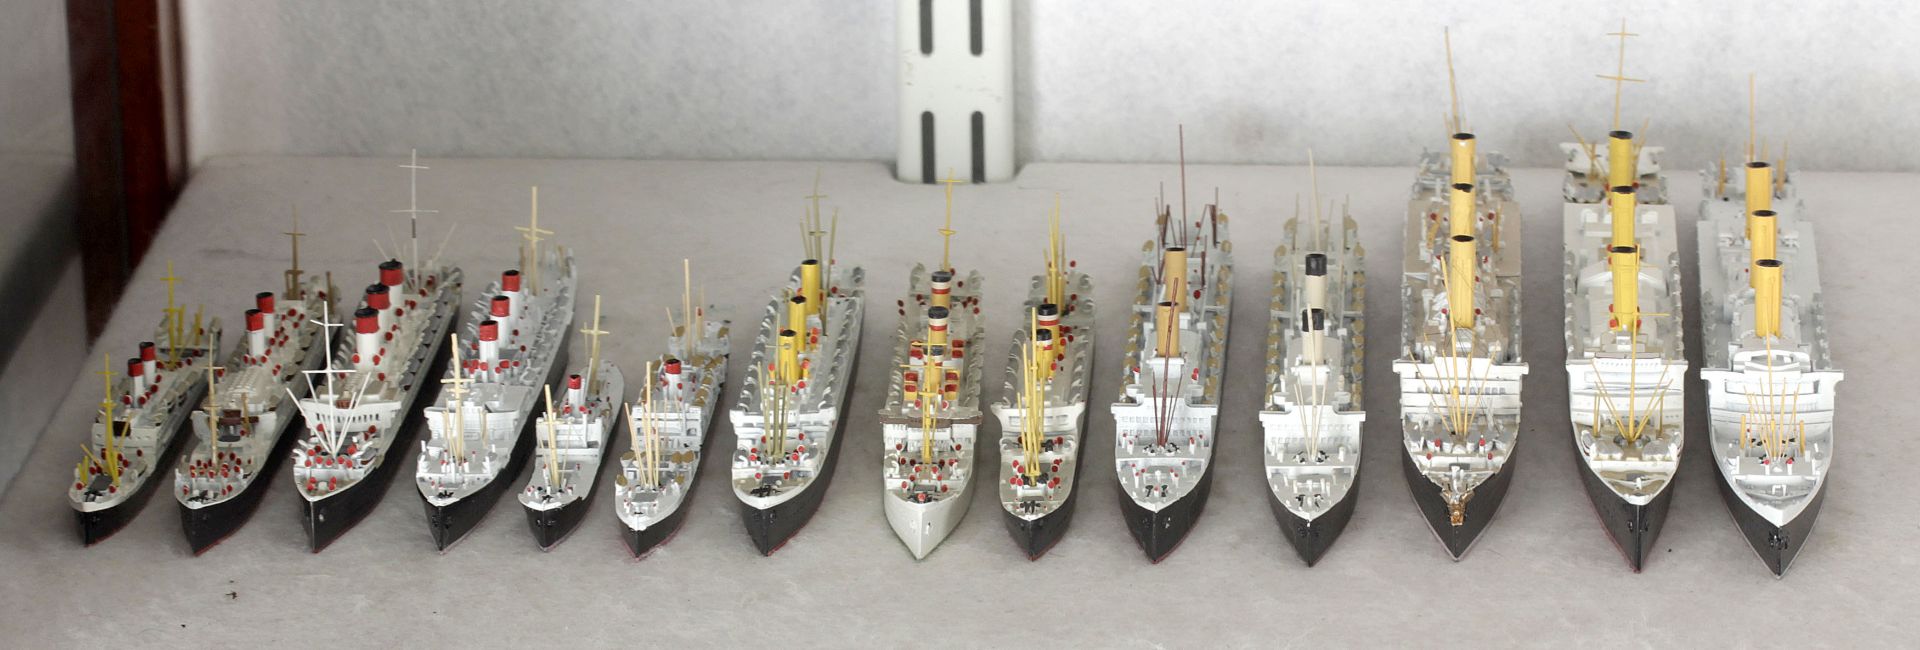 14 Metallschiffsmodelle, deutsche Handelsschiffe von 1900-1914